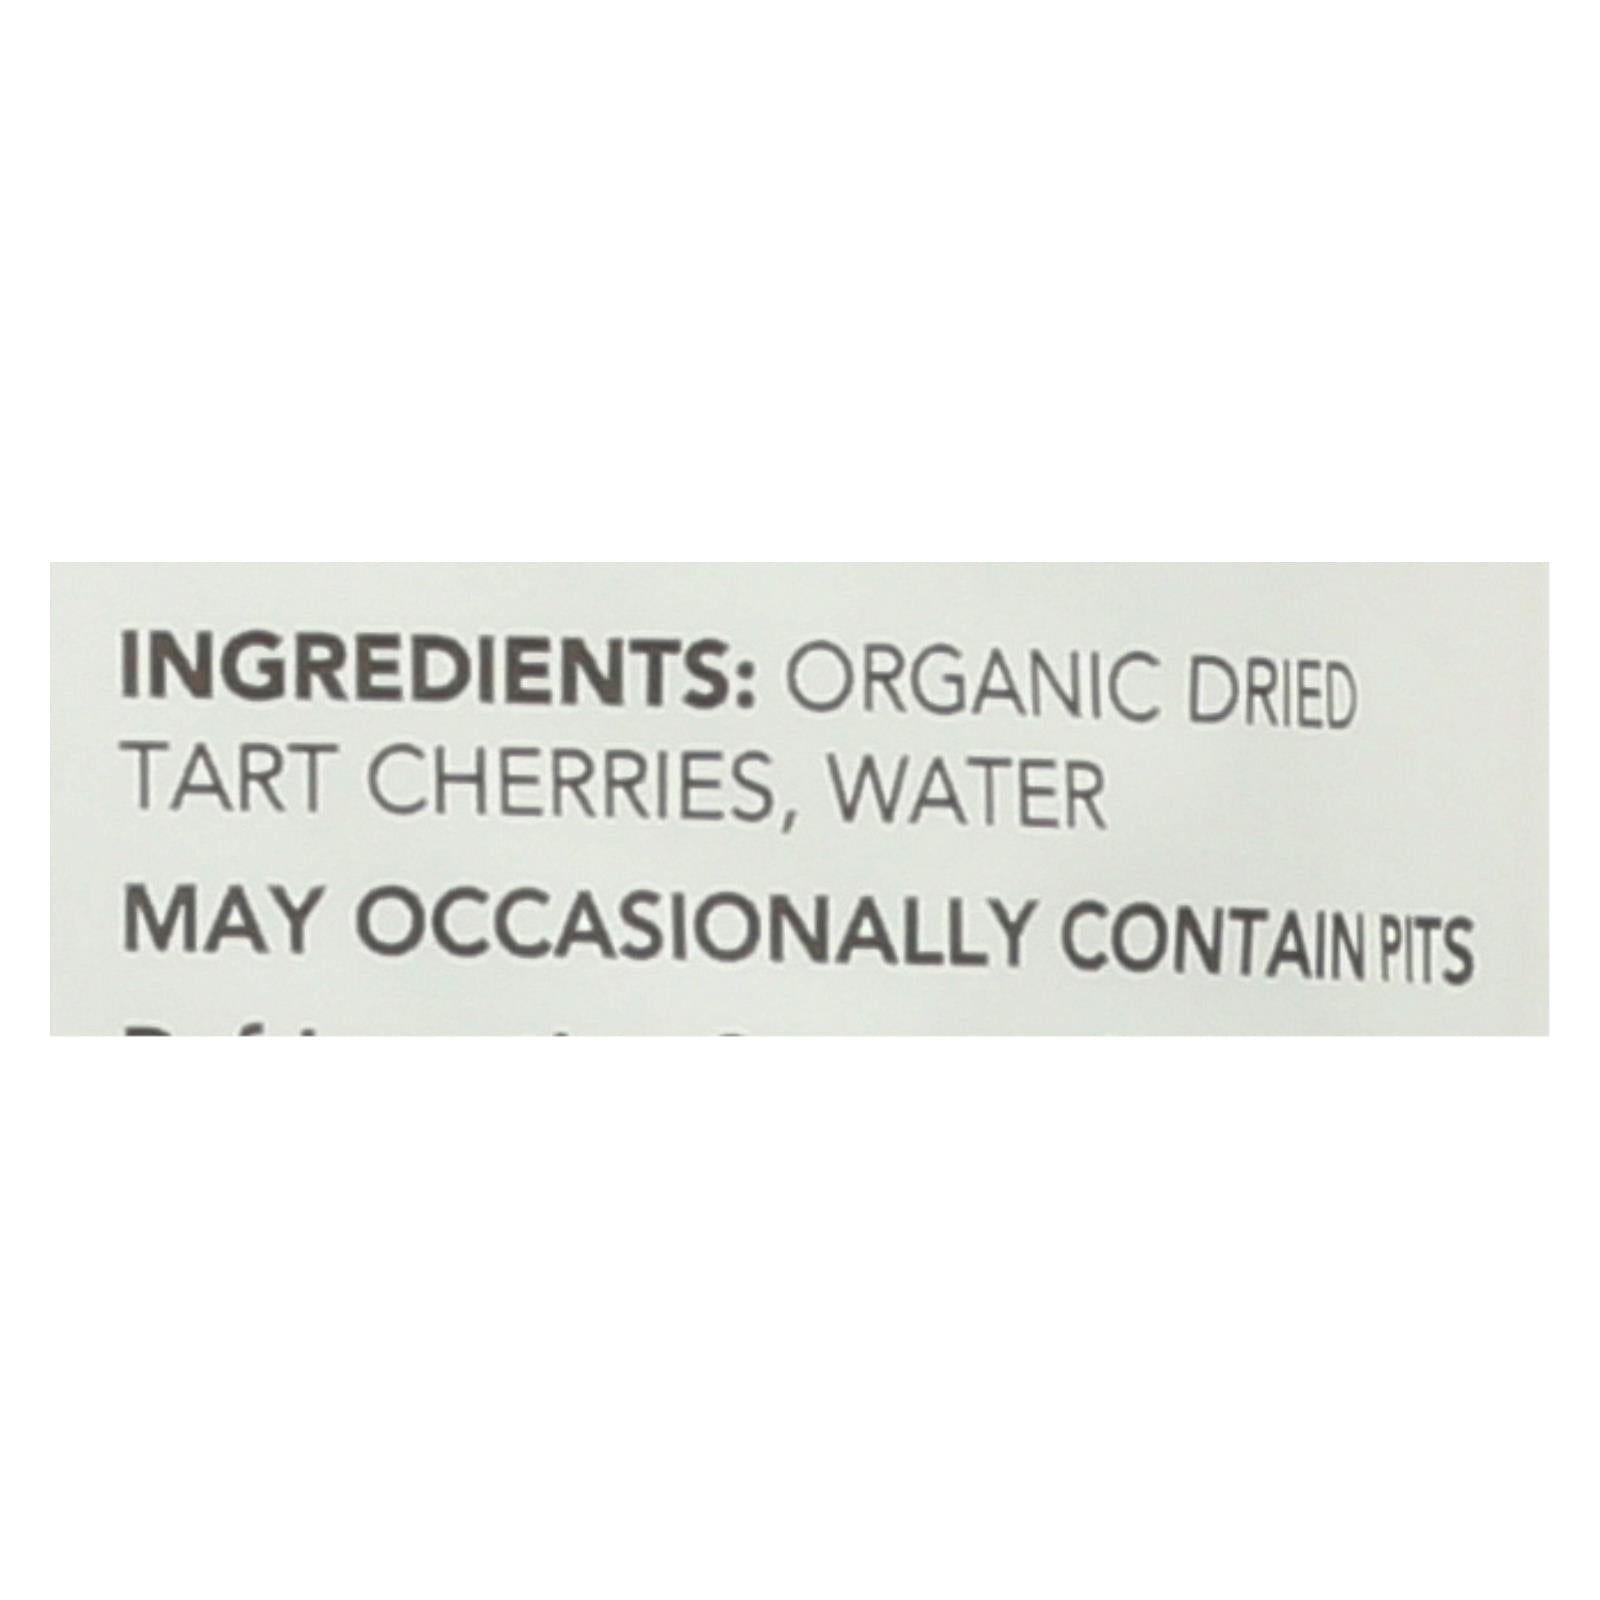 Fruit Bliss - Organic Tart Dried Cherries - Case Of 6 - 4 Oz.